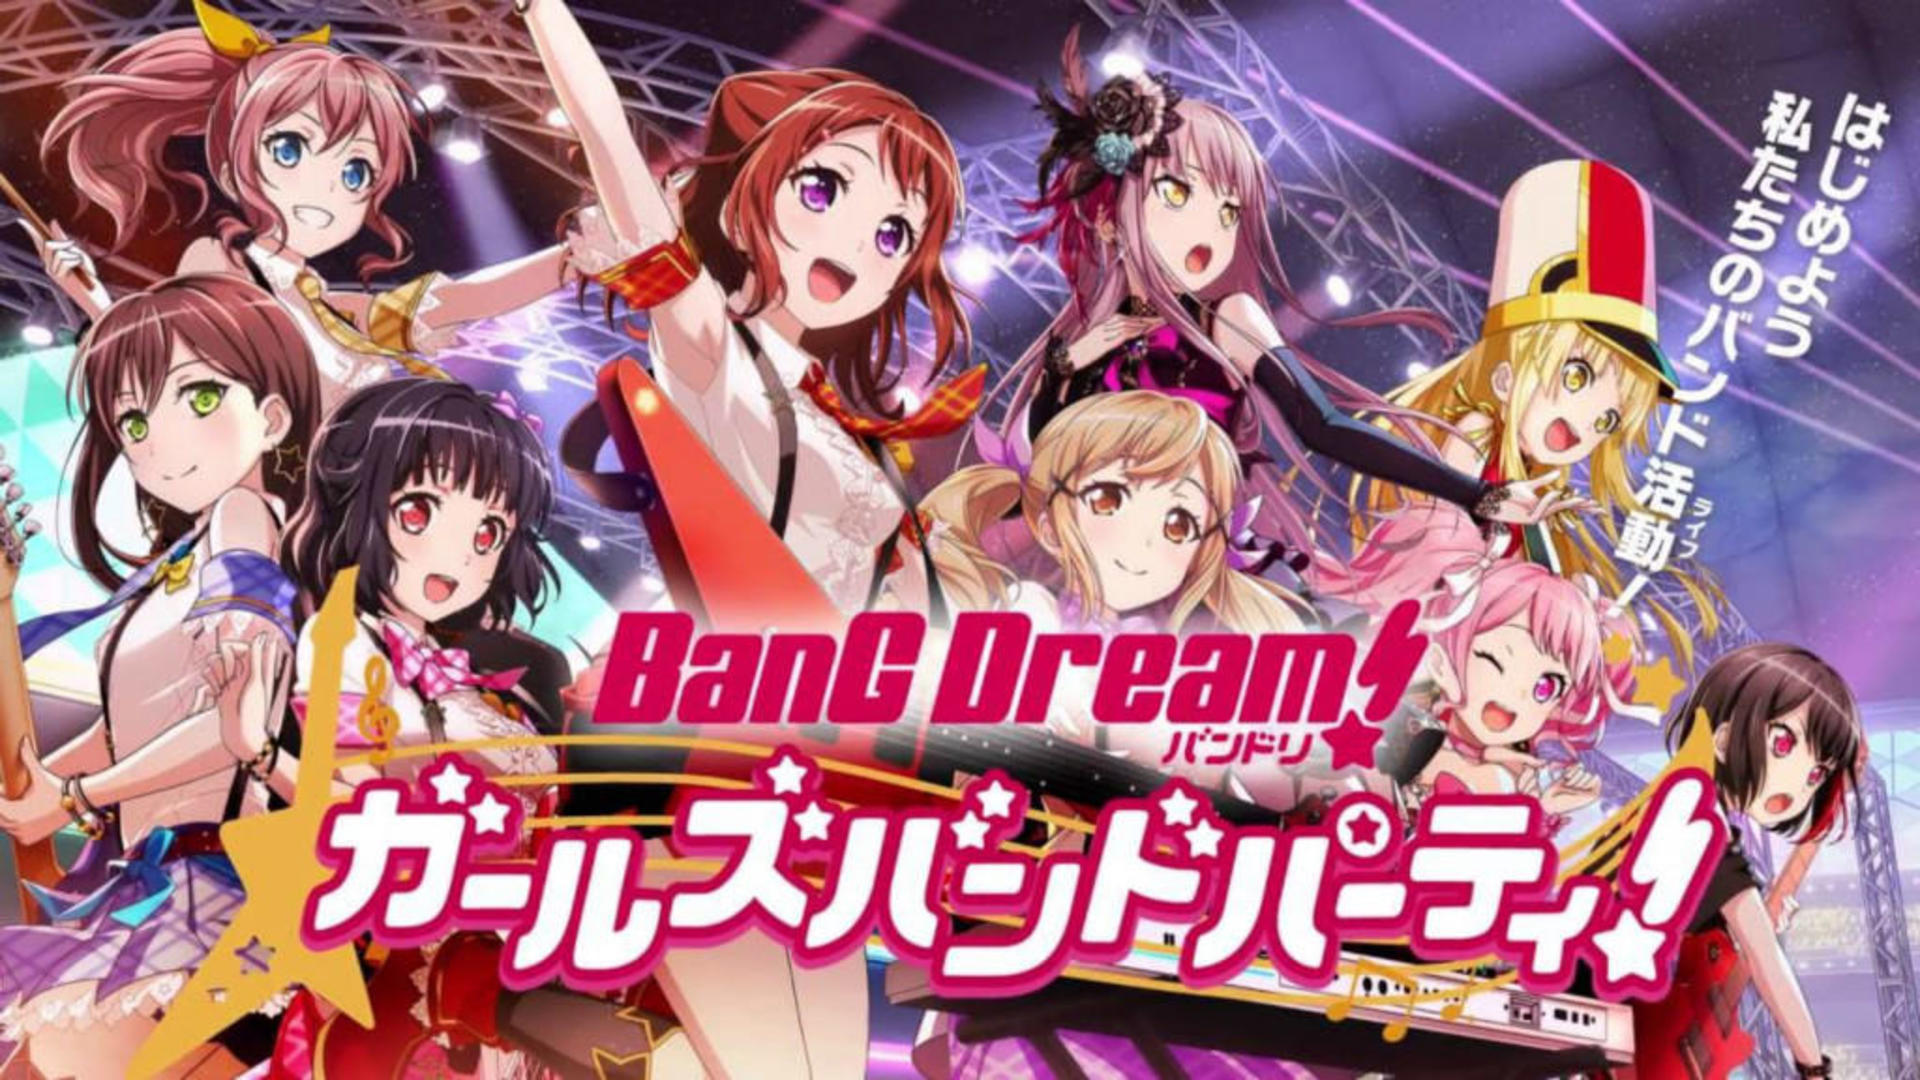 Banner of BanG အိပ်မက်။ Girls Band ပါတီ။ 8.1.0